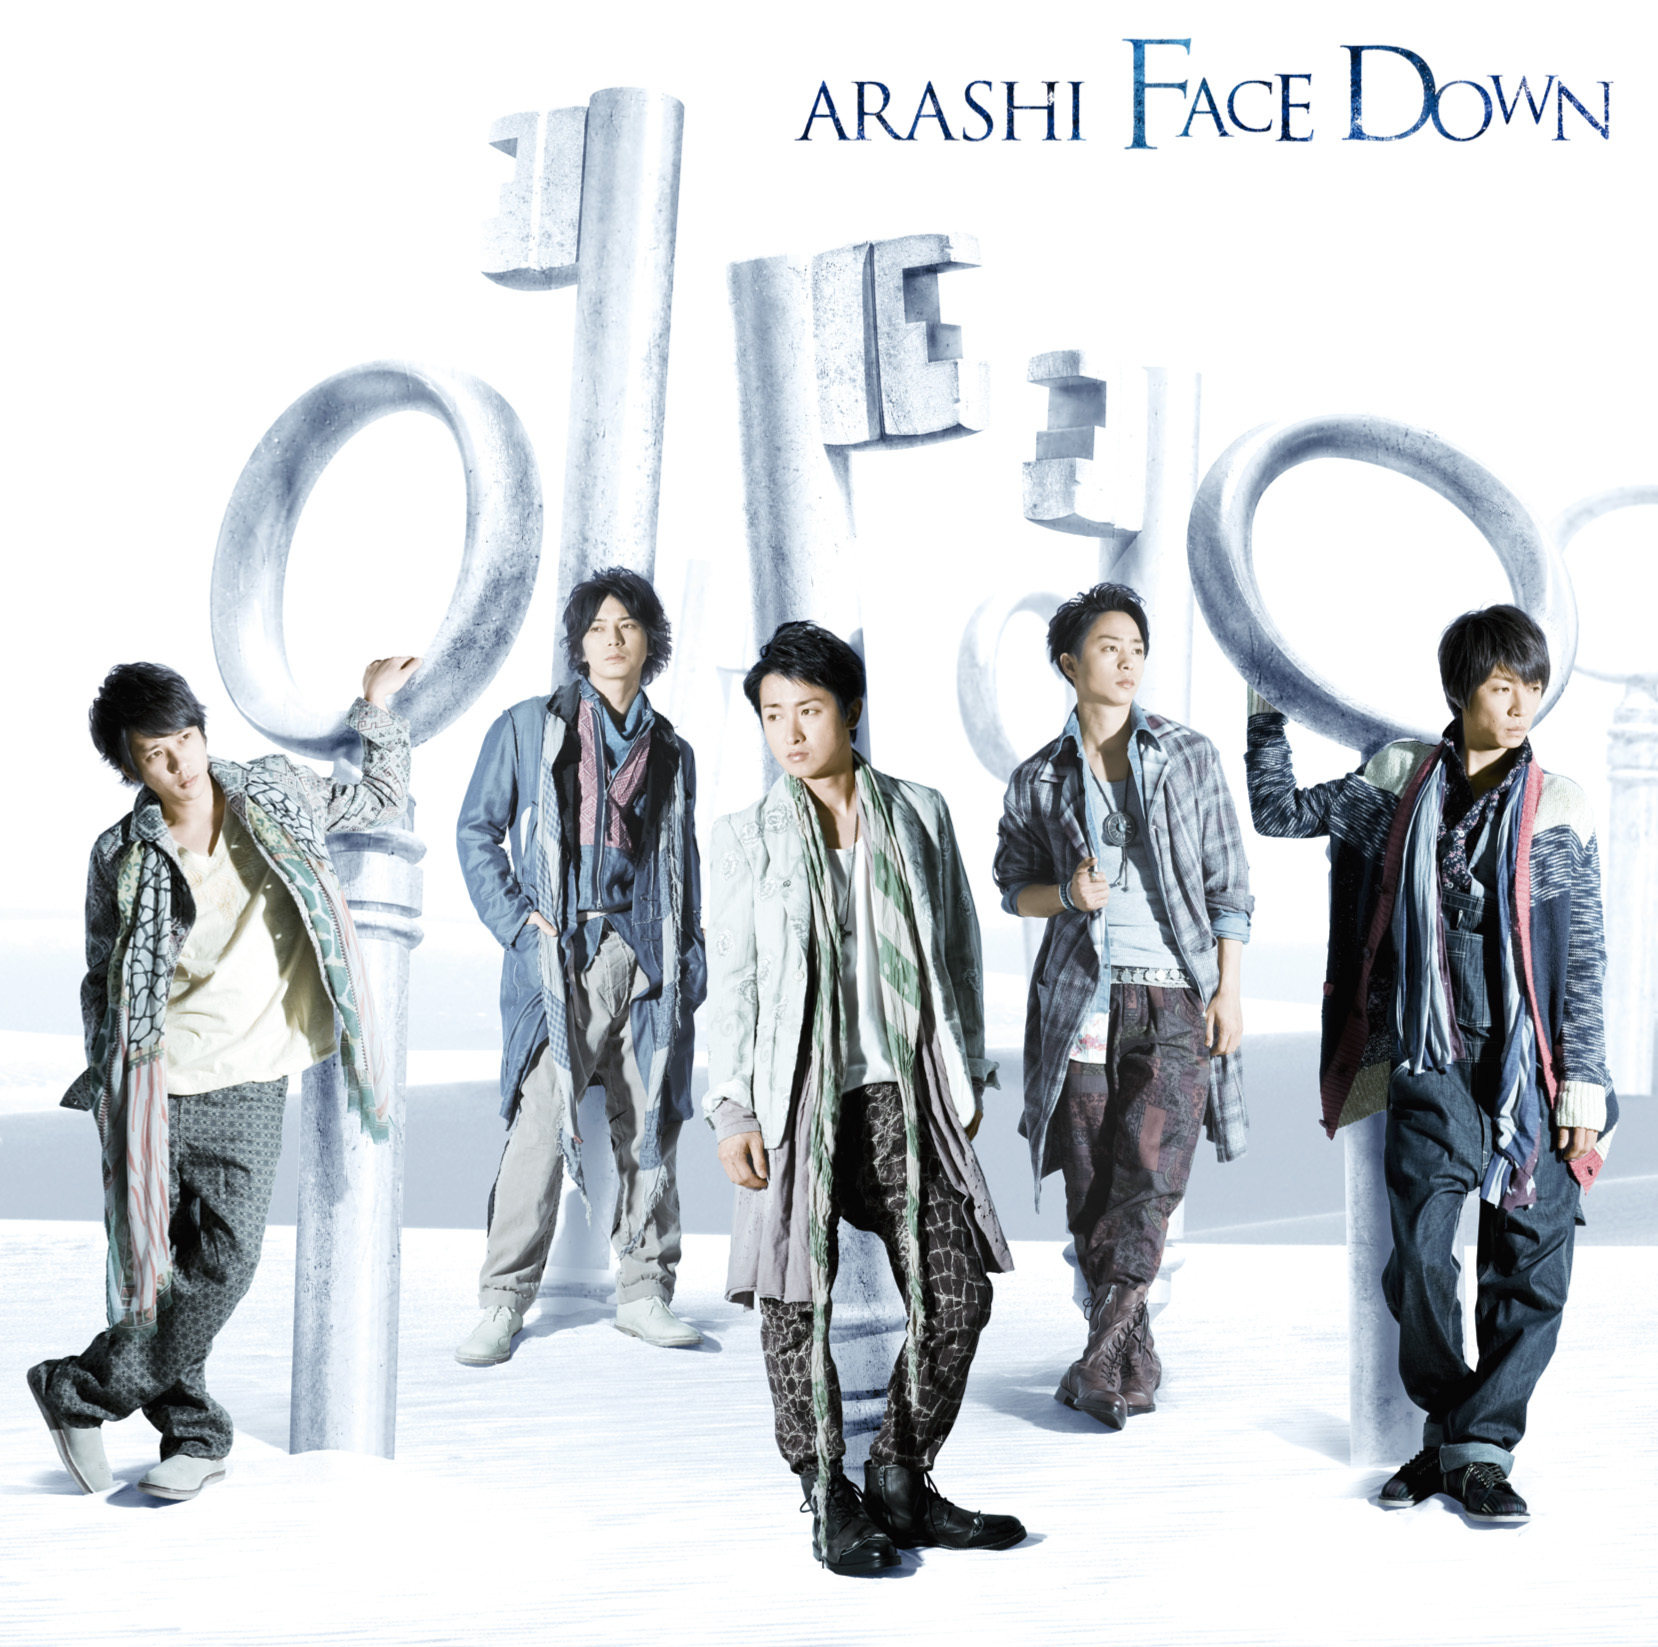 嵐 (あらし) 38thシングル『Face Down (フェイス・ダウン)』(初回限定盤) 高画質CDジャケット画像